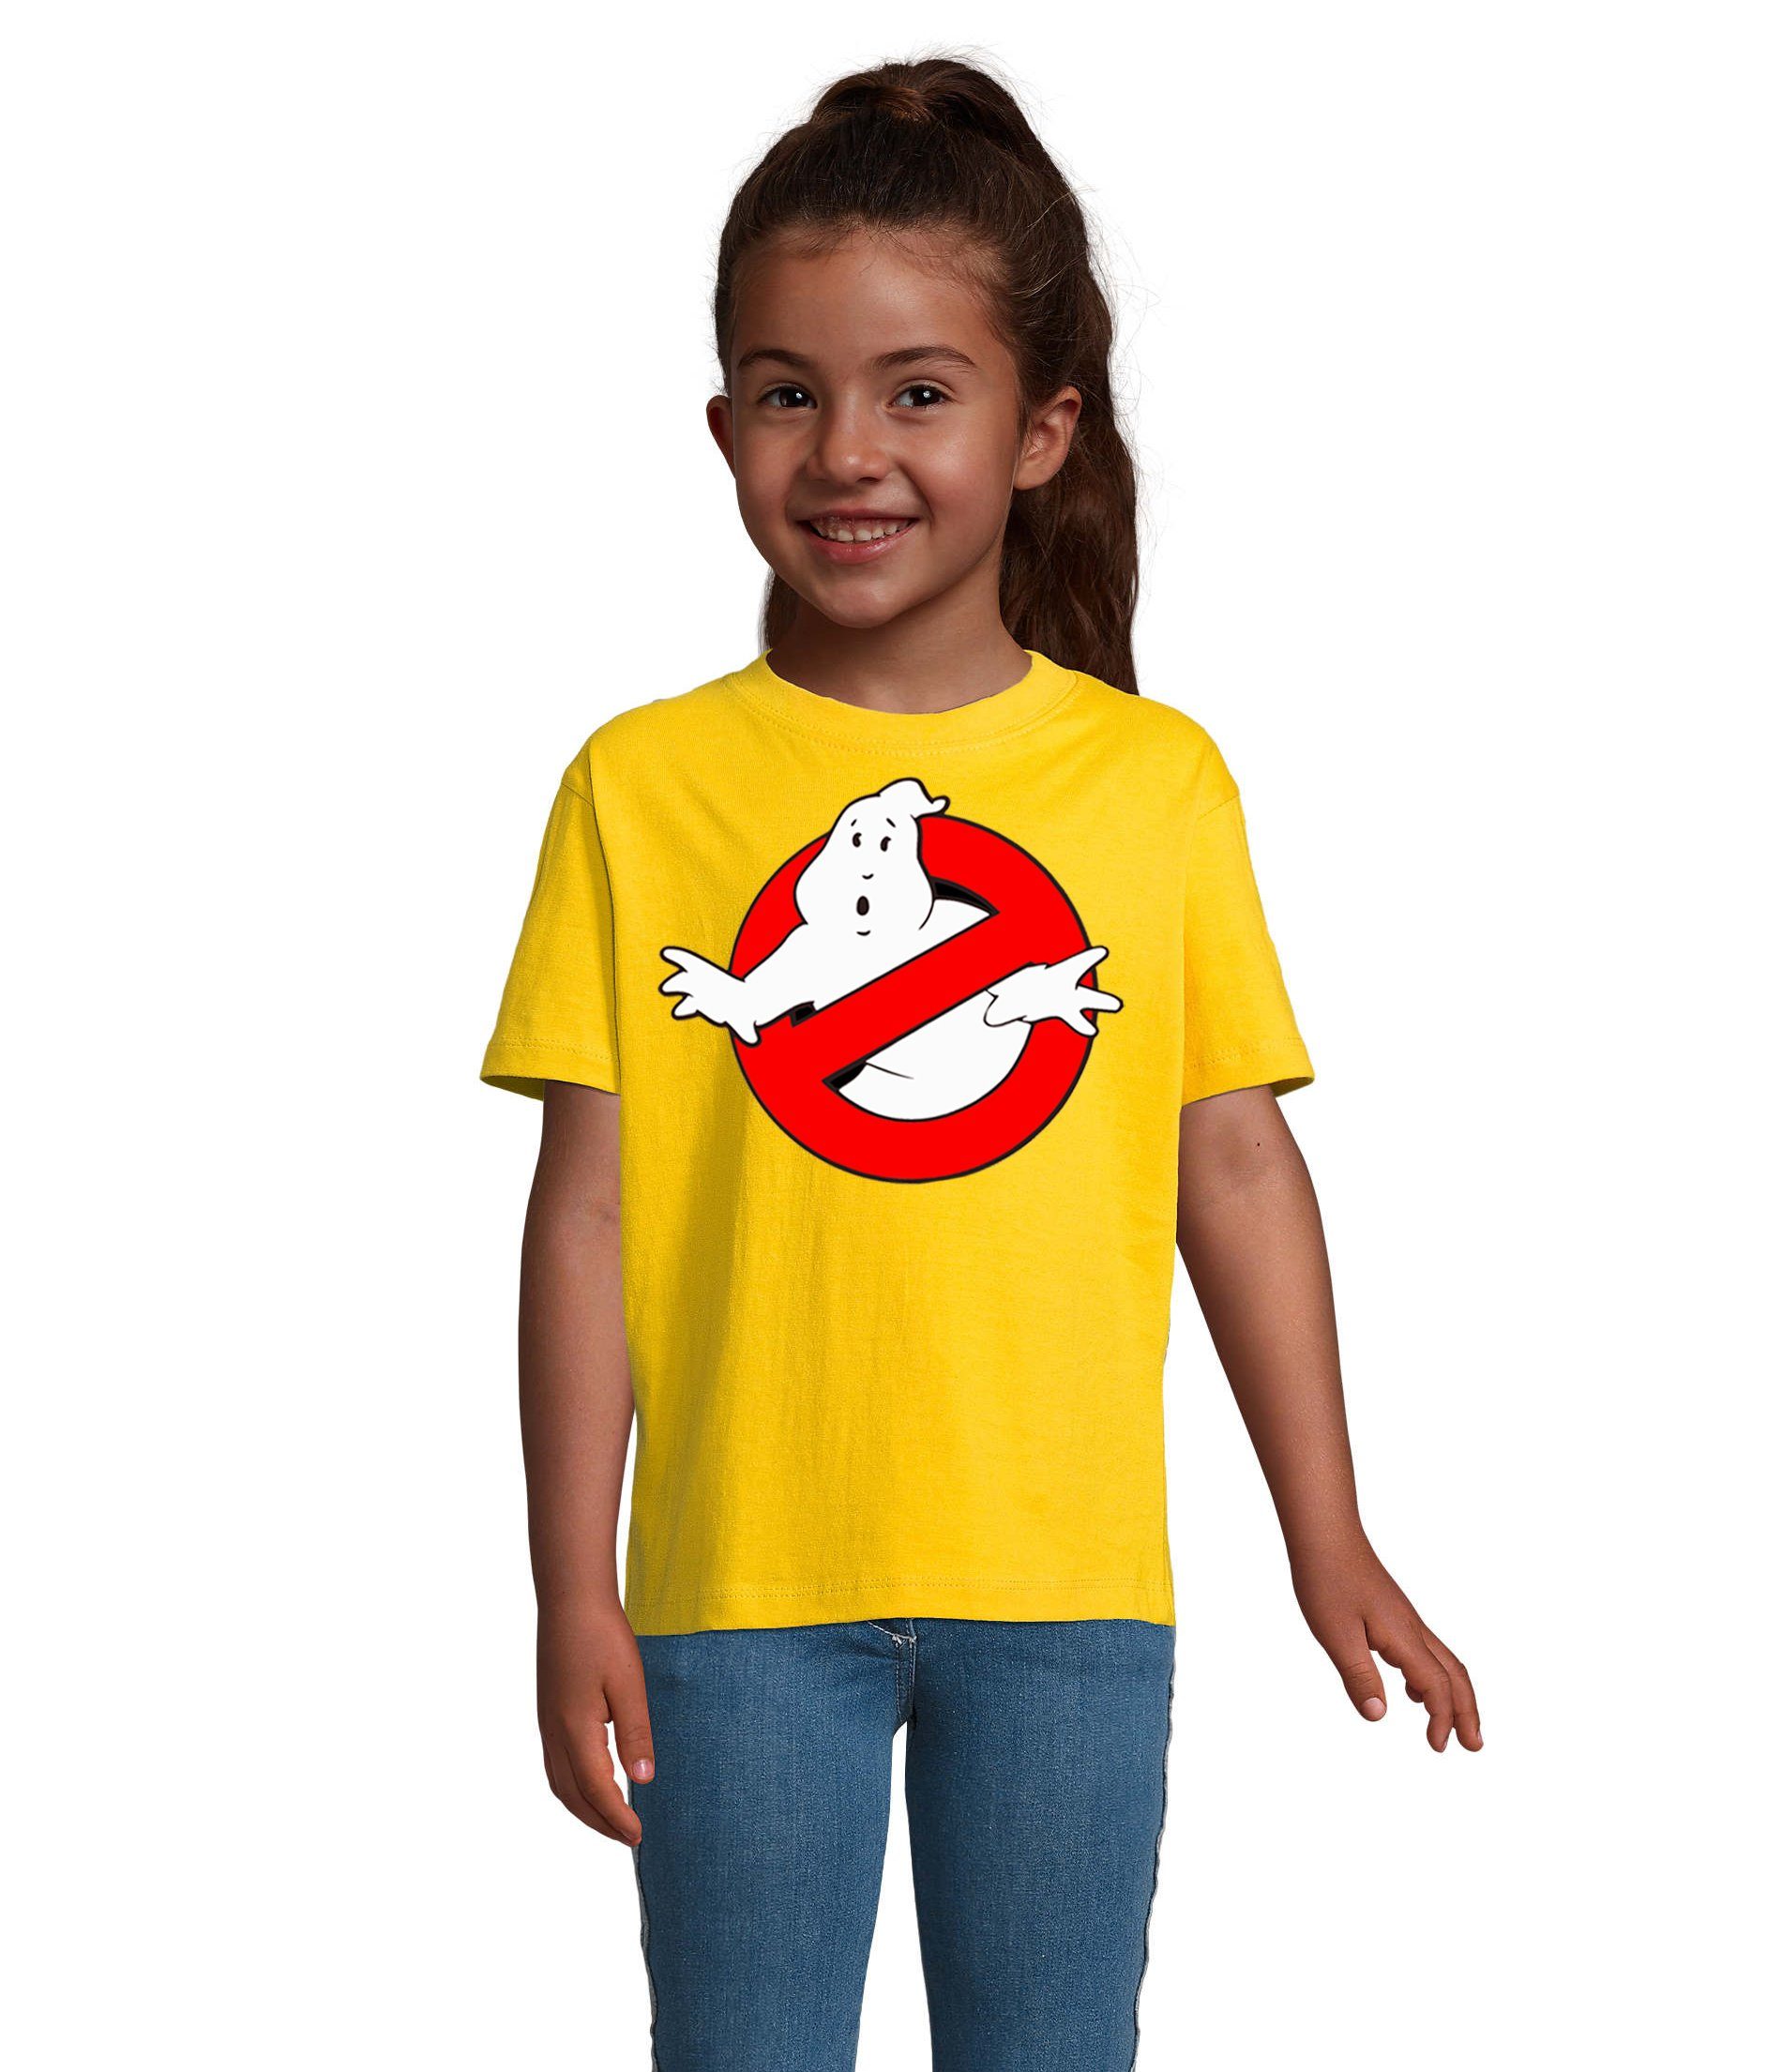 Blondie & Brownie T-Shirt Kinder Jungen & Mädchen Ghostbusters Ghost Geister Geisterjäger in vielen Farben Gelb